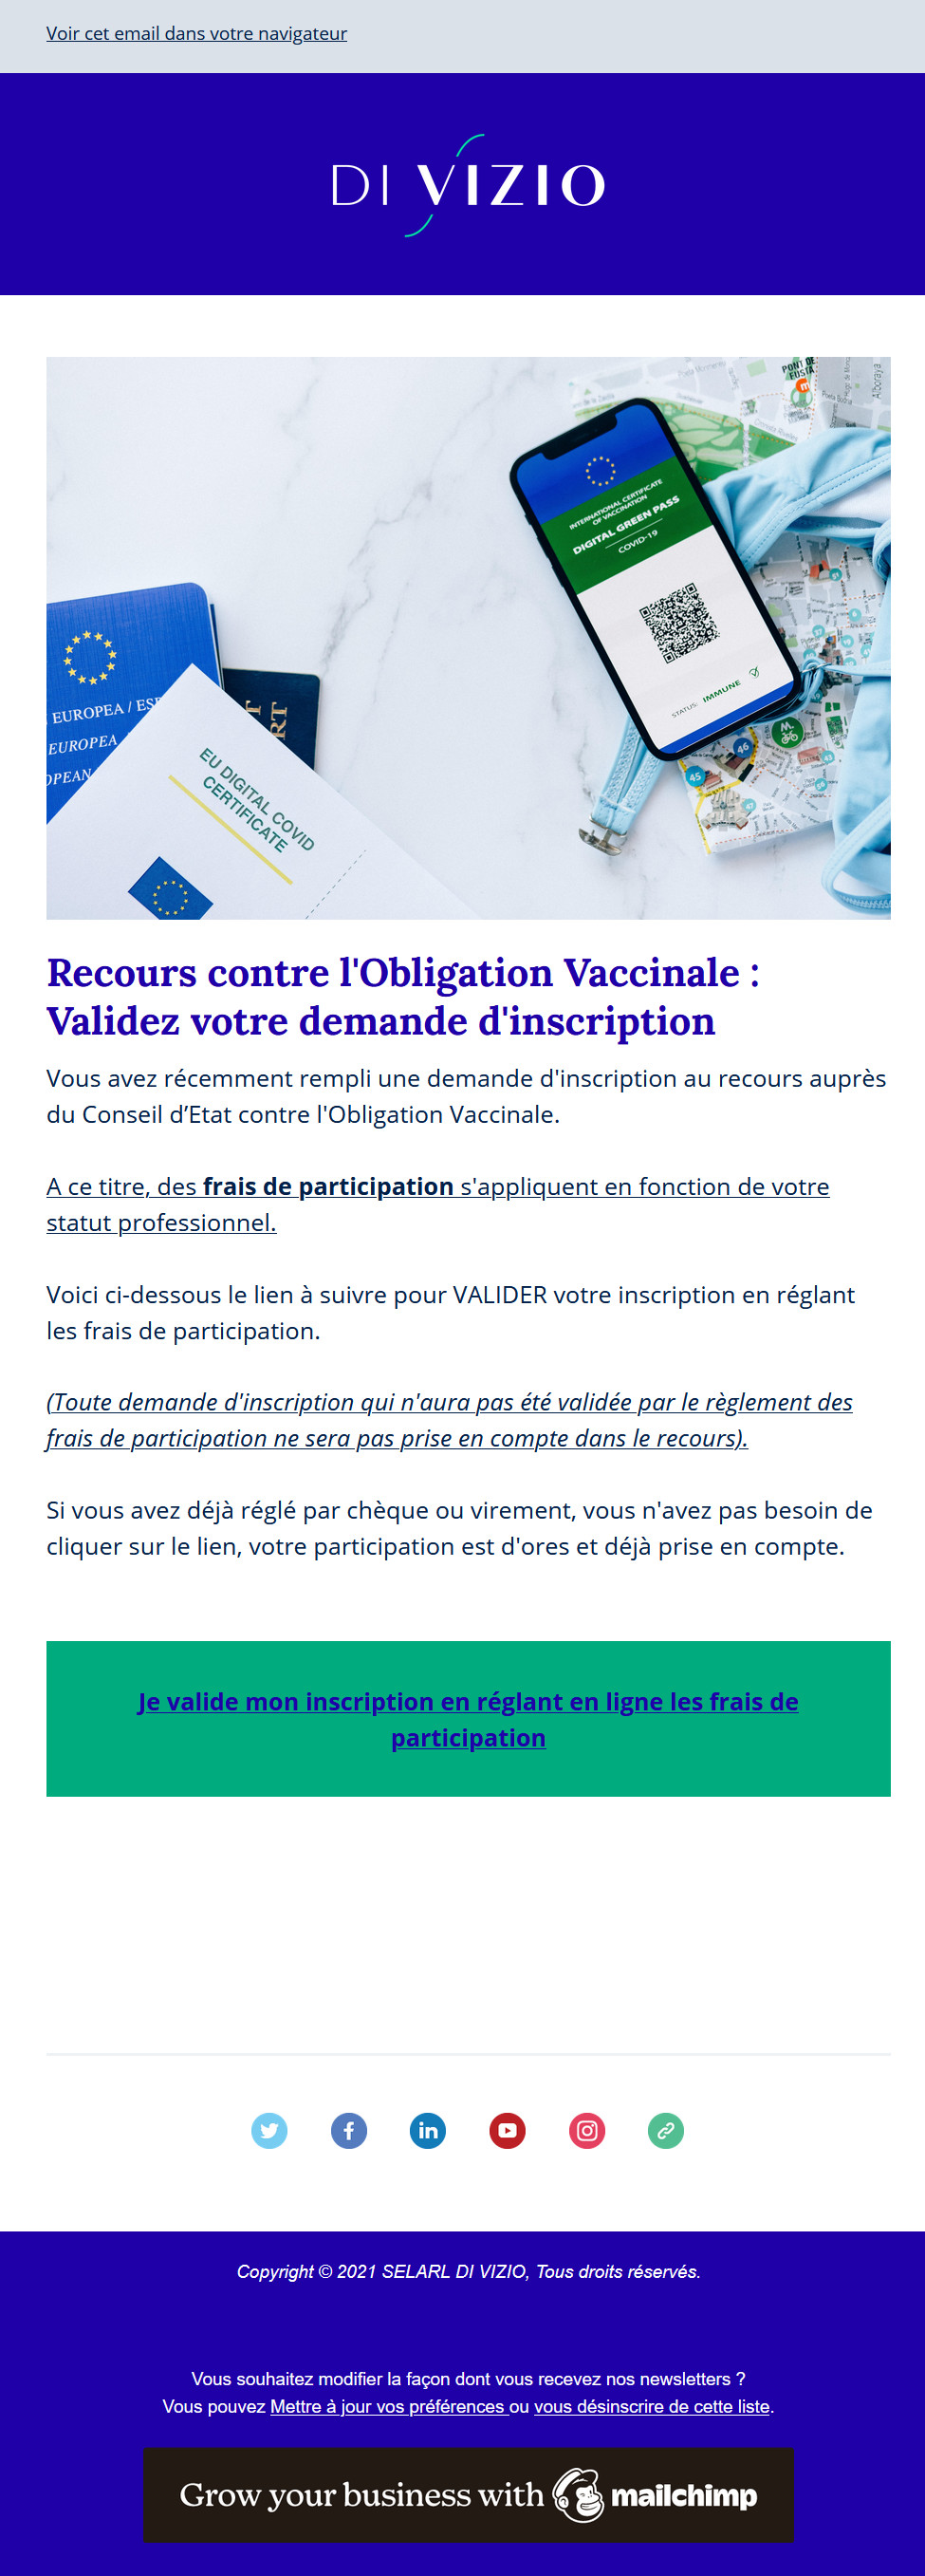 Mail de confirmation pour validation inscription au recours Di Vizio - Reçu le 24/07/2021à11h22